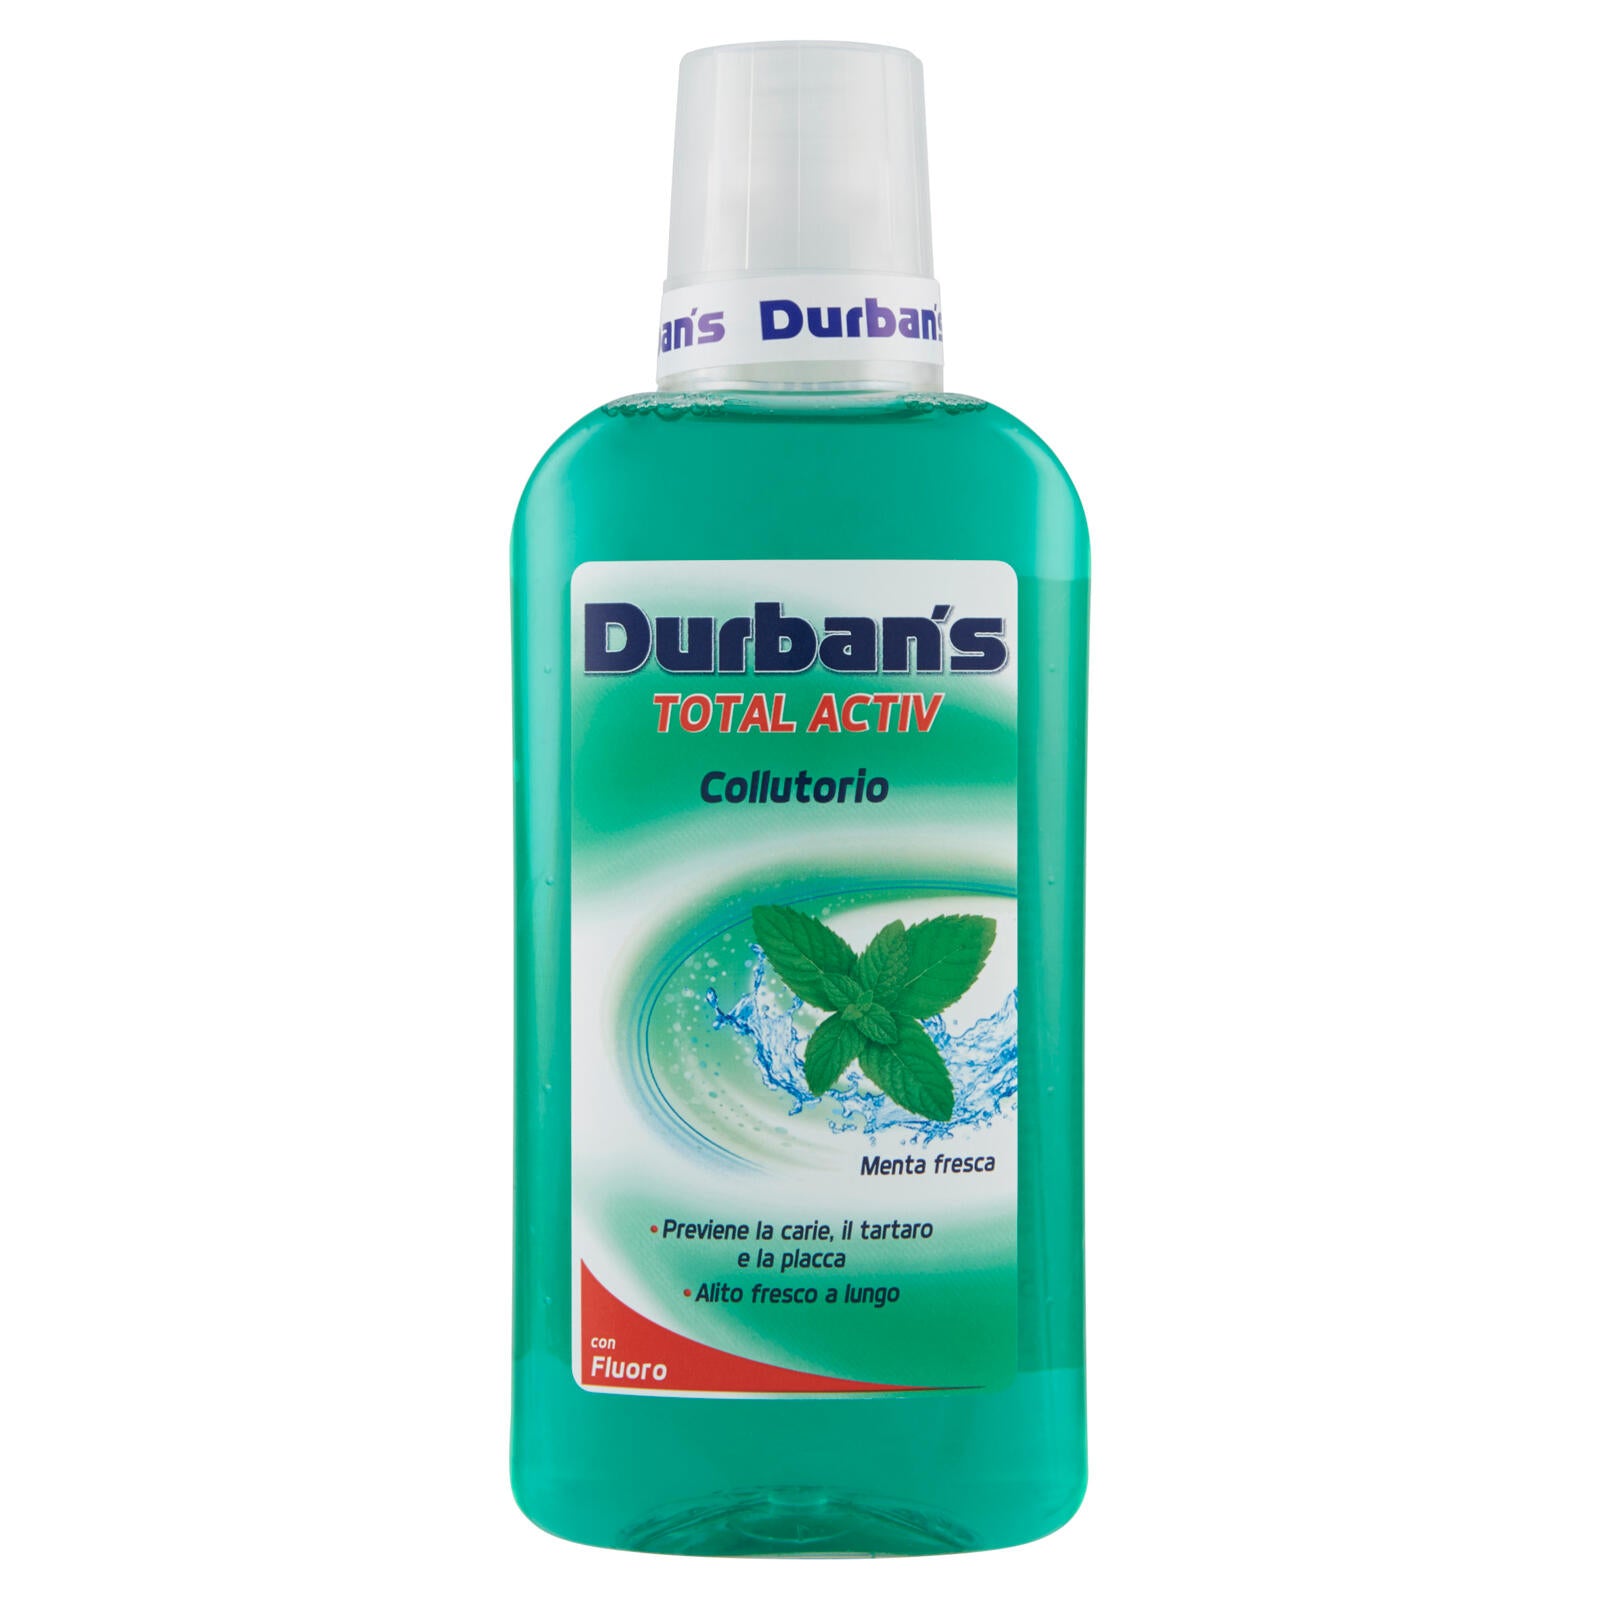 Durban's Total Activ con Fluoro Collutorio Menta fresca 500 ml